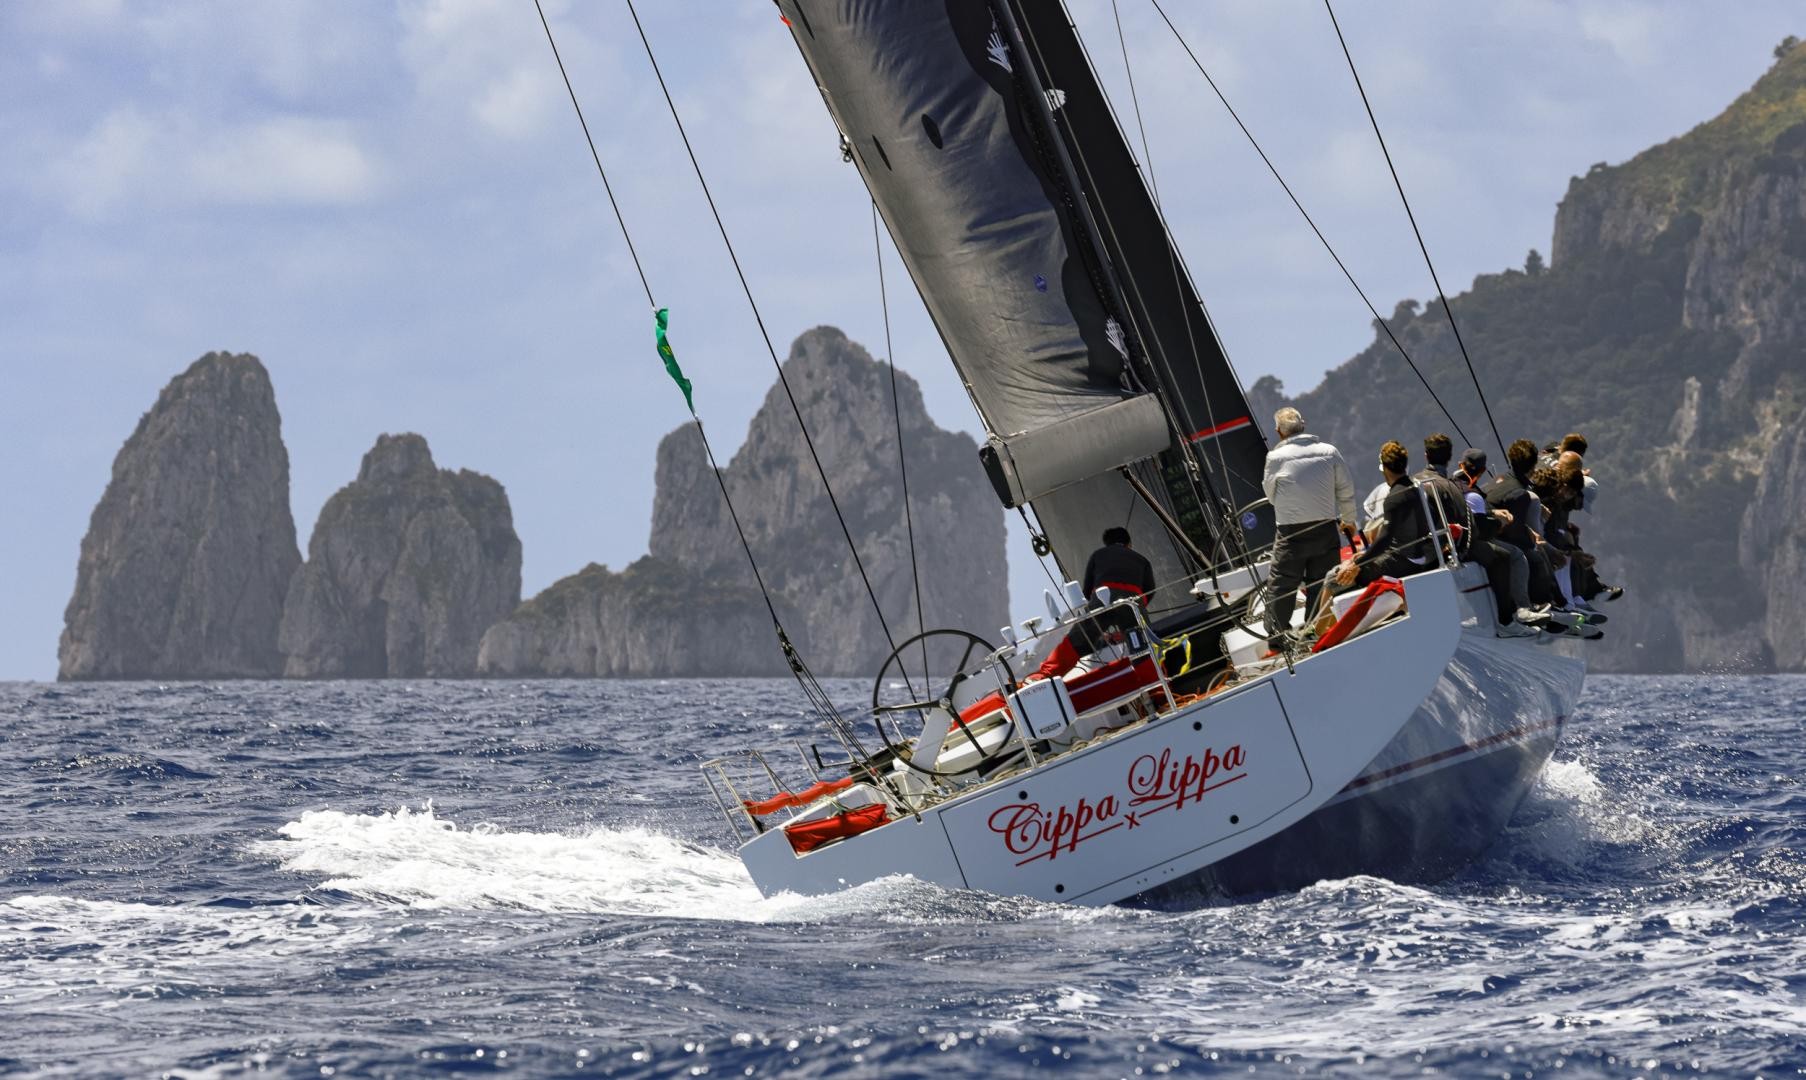 Cippa Lippa approaches the Faraglioni islands. Photo: Studio Borlenghi